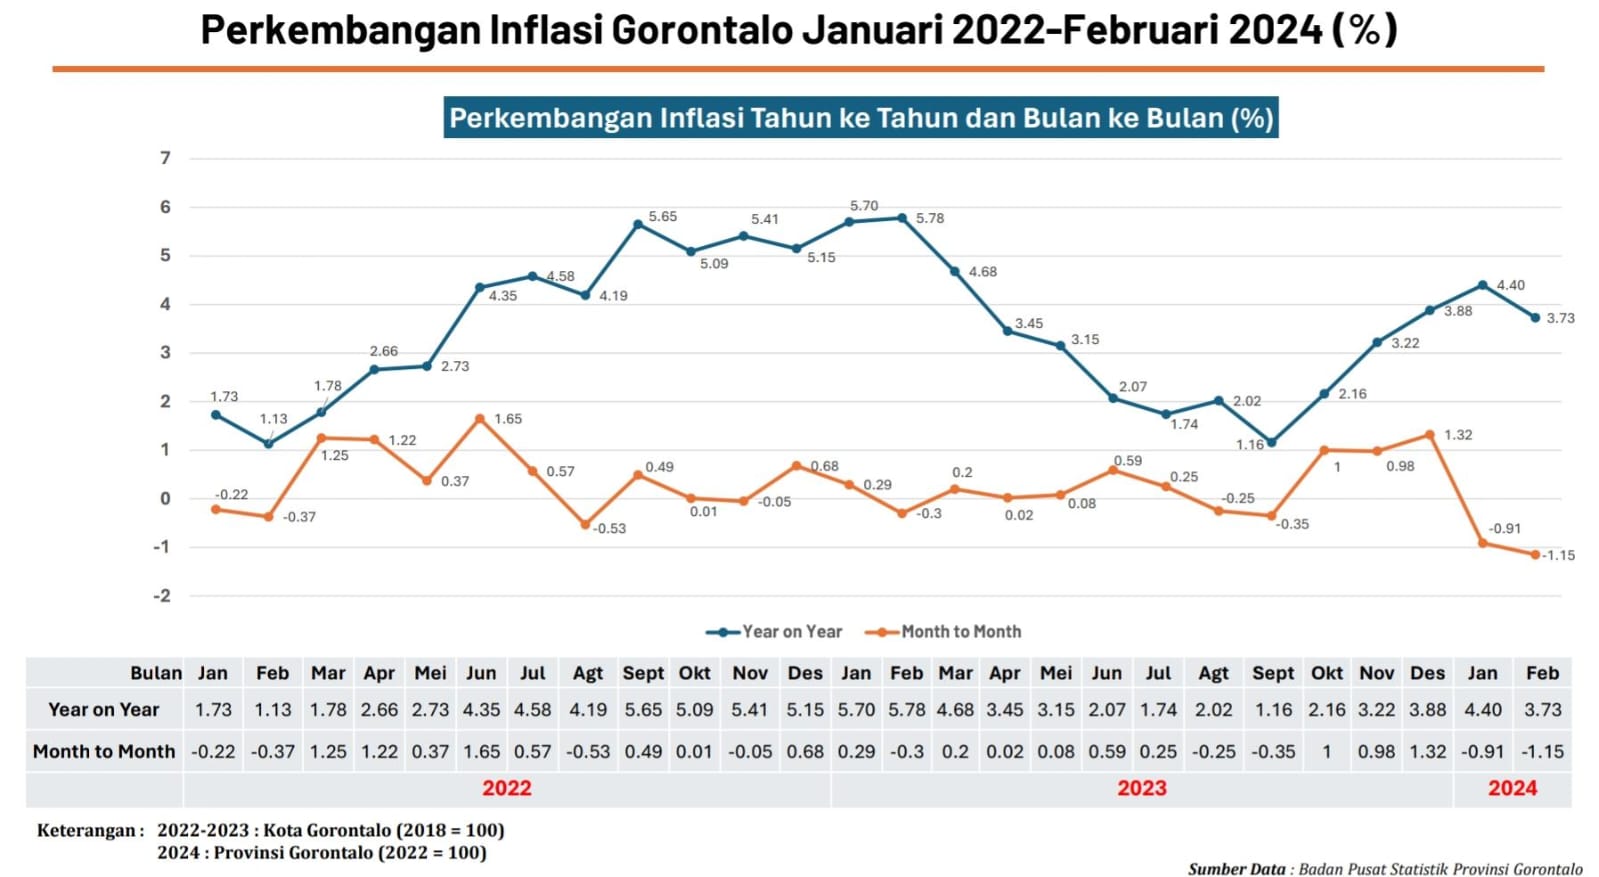  Kenapa Inflasi Gorontalo Tinggi di 2024? Sini Merapat Biar Paham   